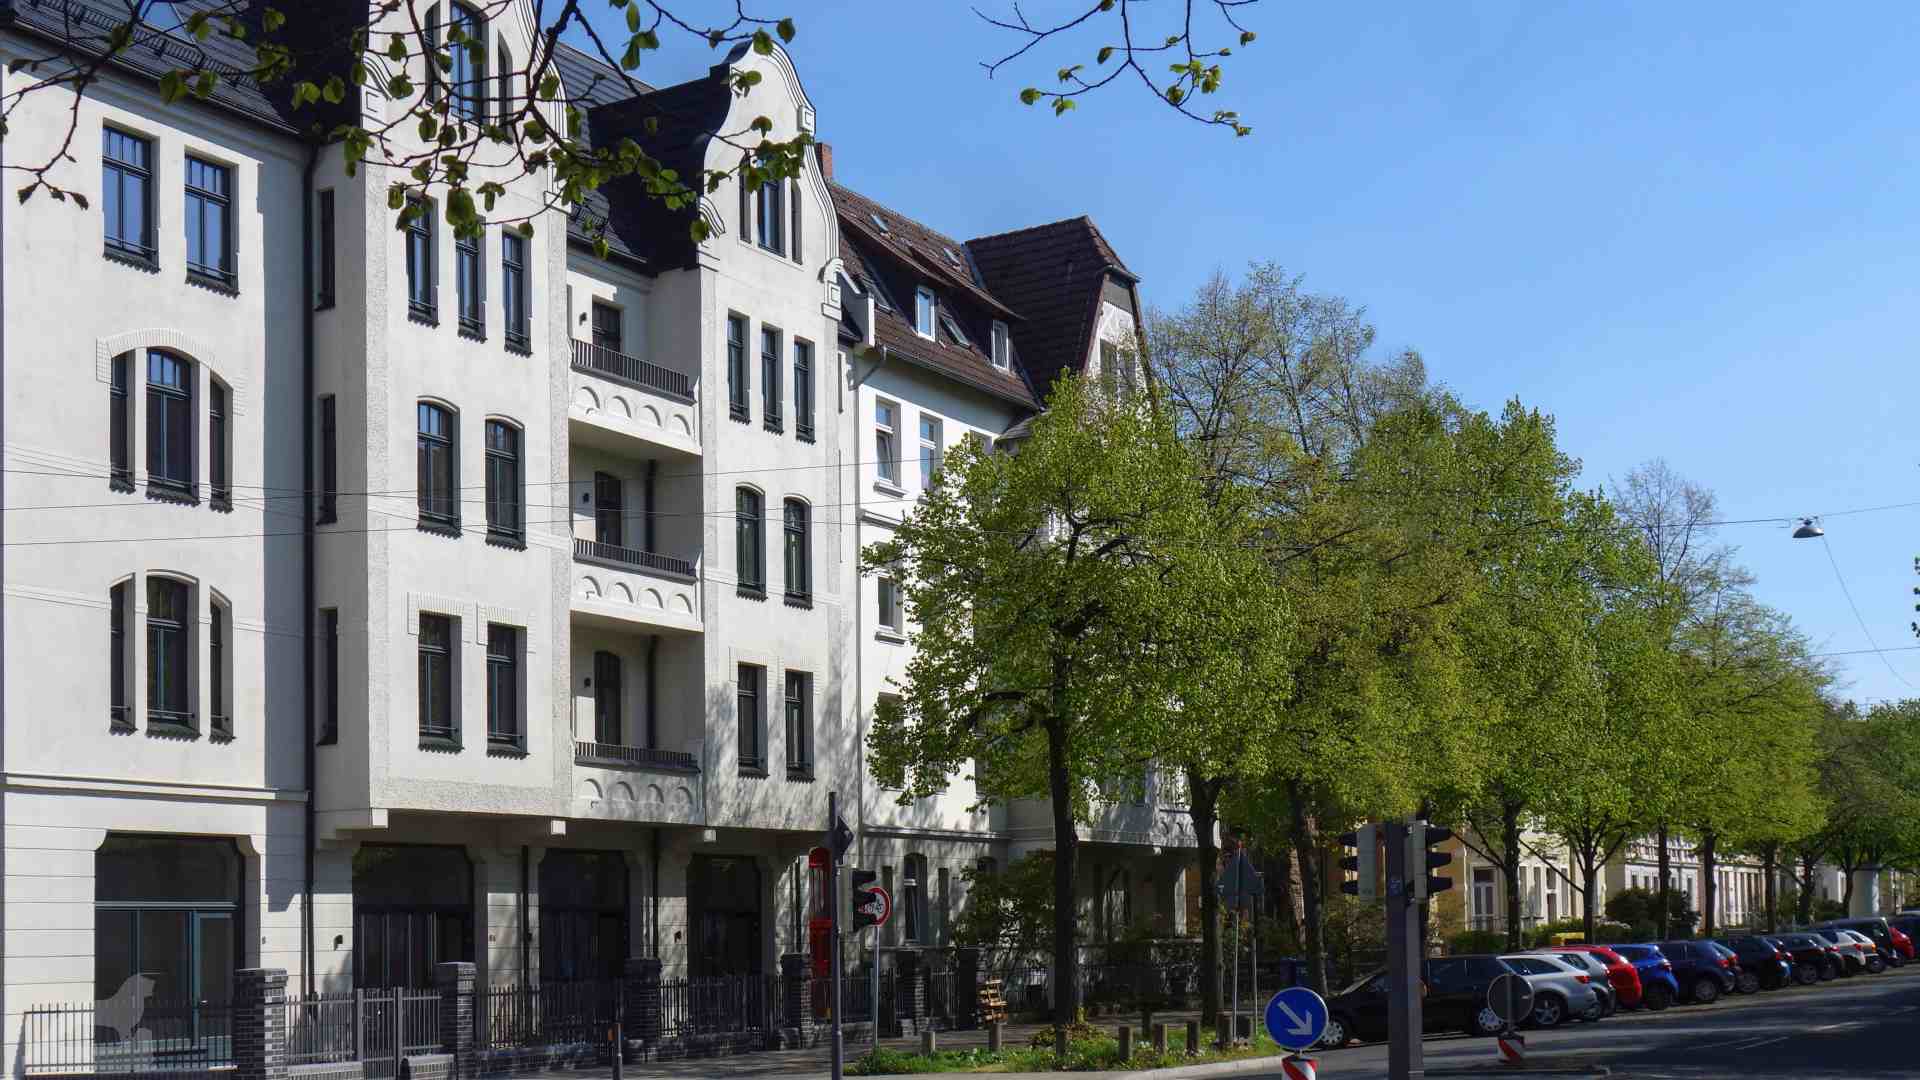 Humboldtstraße